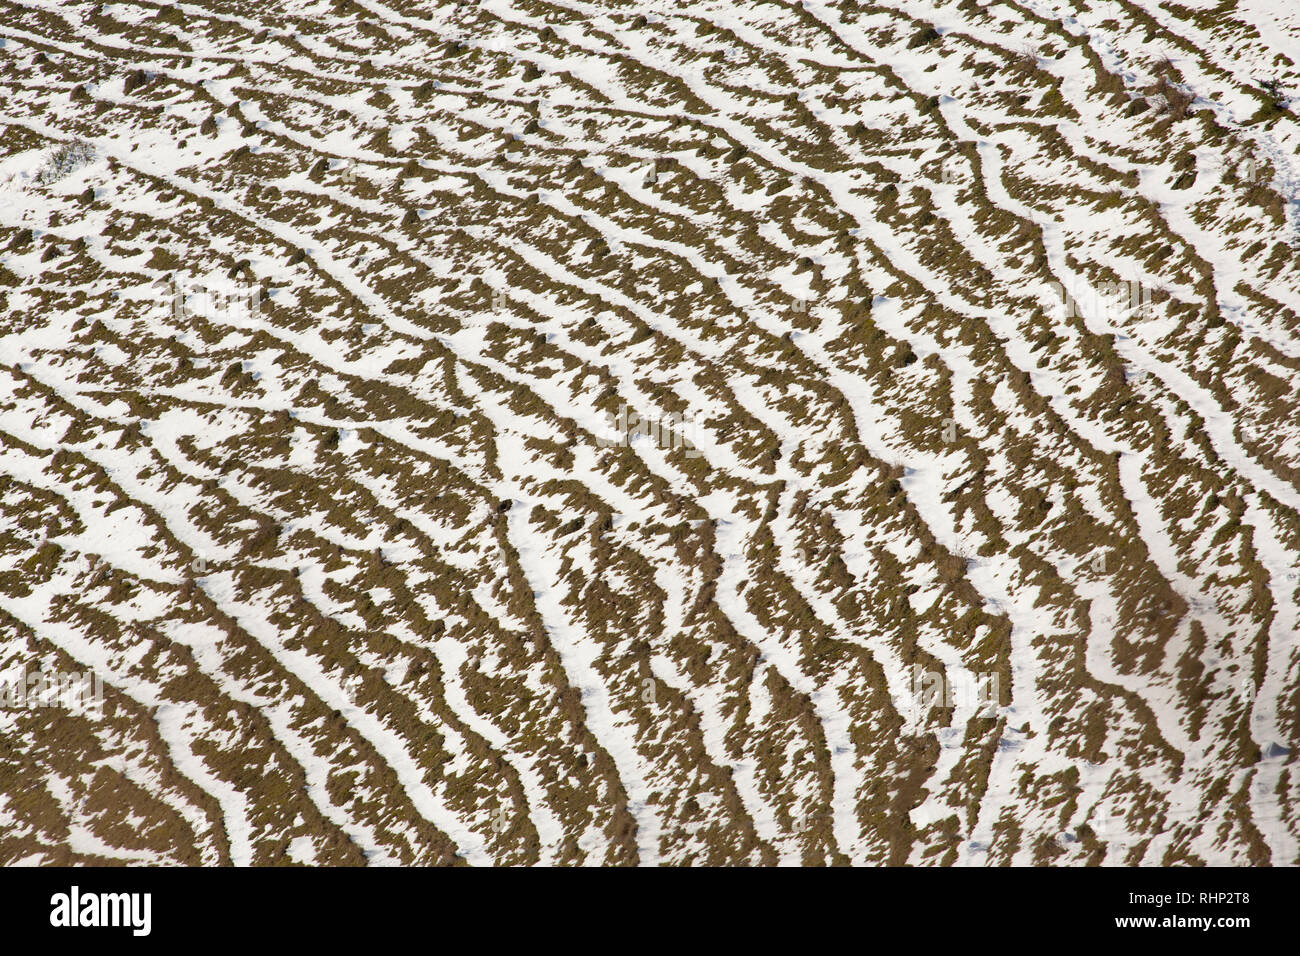 Schnee, der auf terracettes gefallen ist. Terracettes sind von der langsamen Bewegung der Boden als mehrere Bergrücken an Hanglagen gebildet. North Dorset Engl Stockfoto